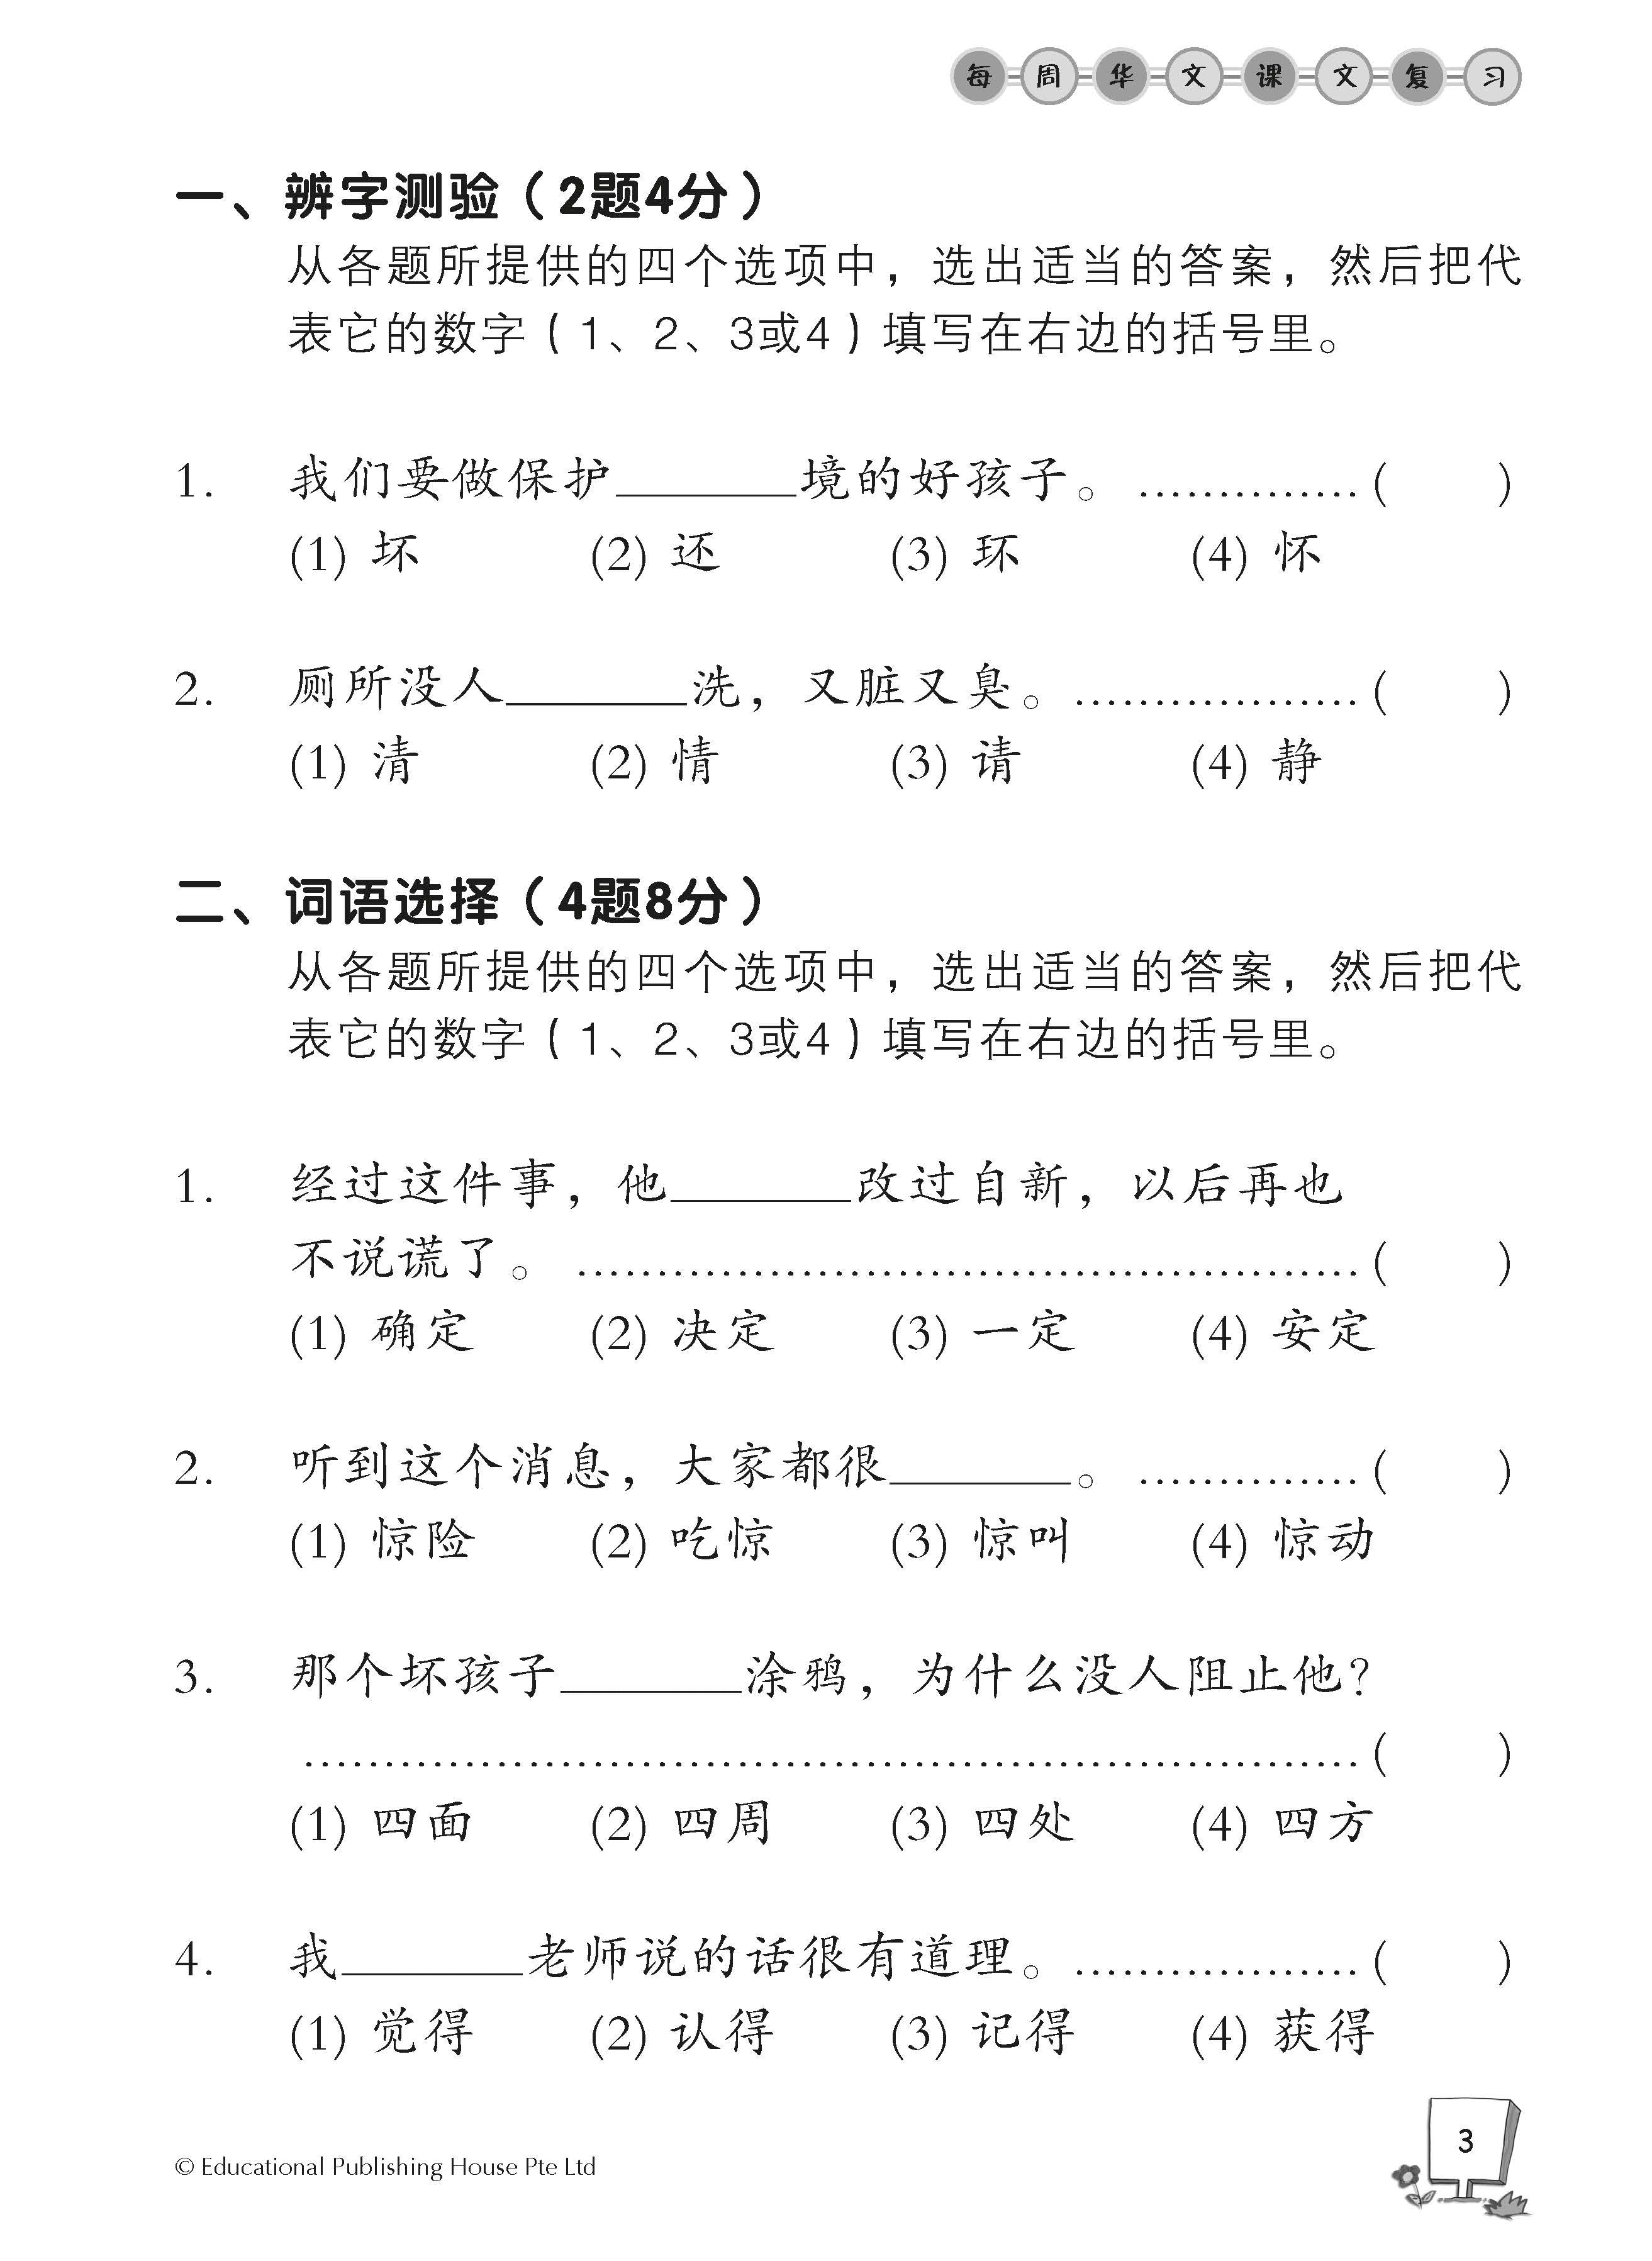 Primary 3B Chinese Weekly Revision 每周华文课文复习